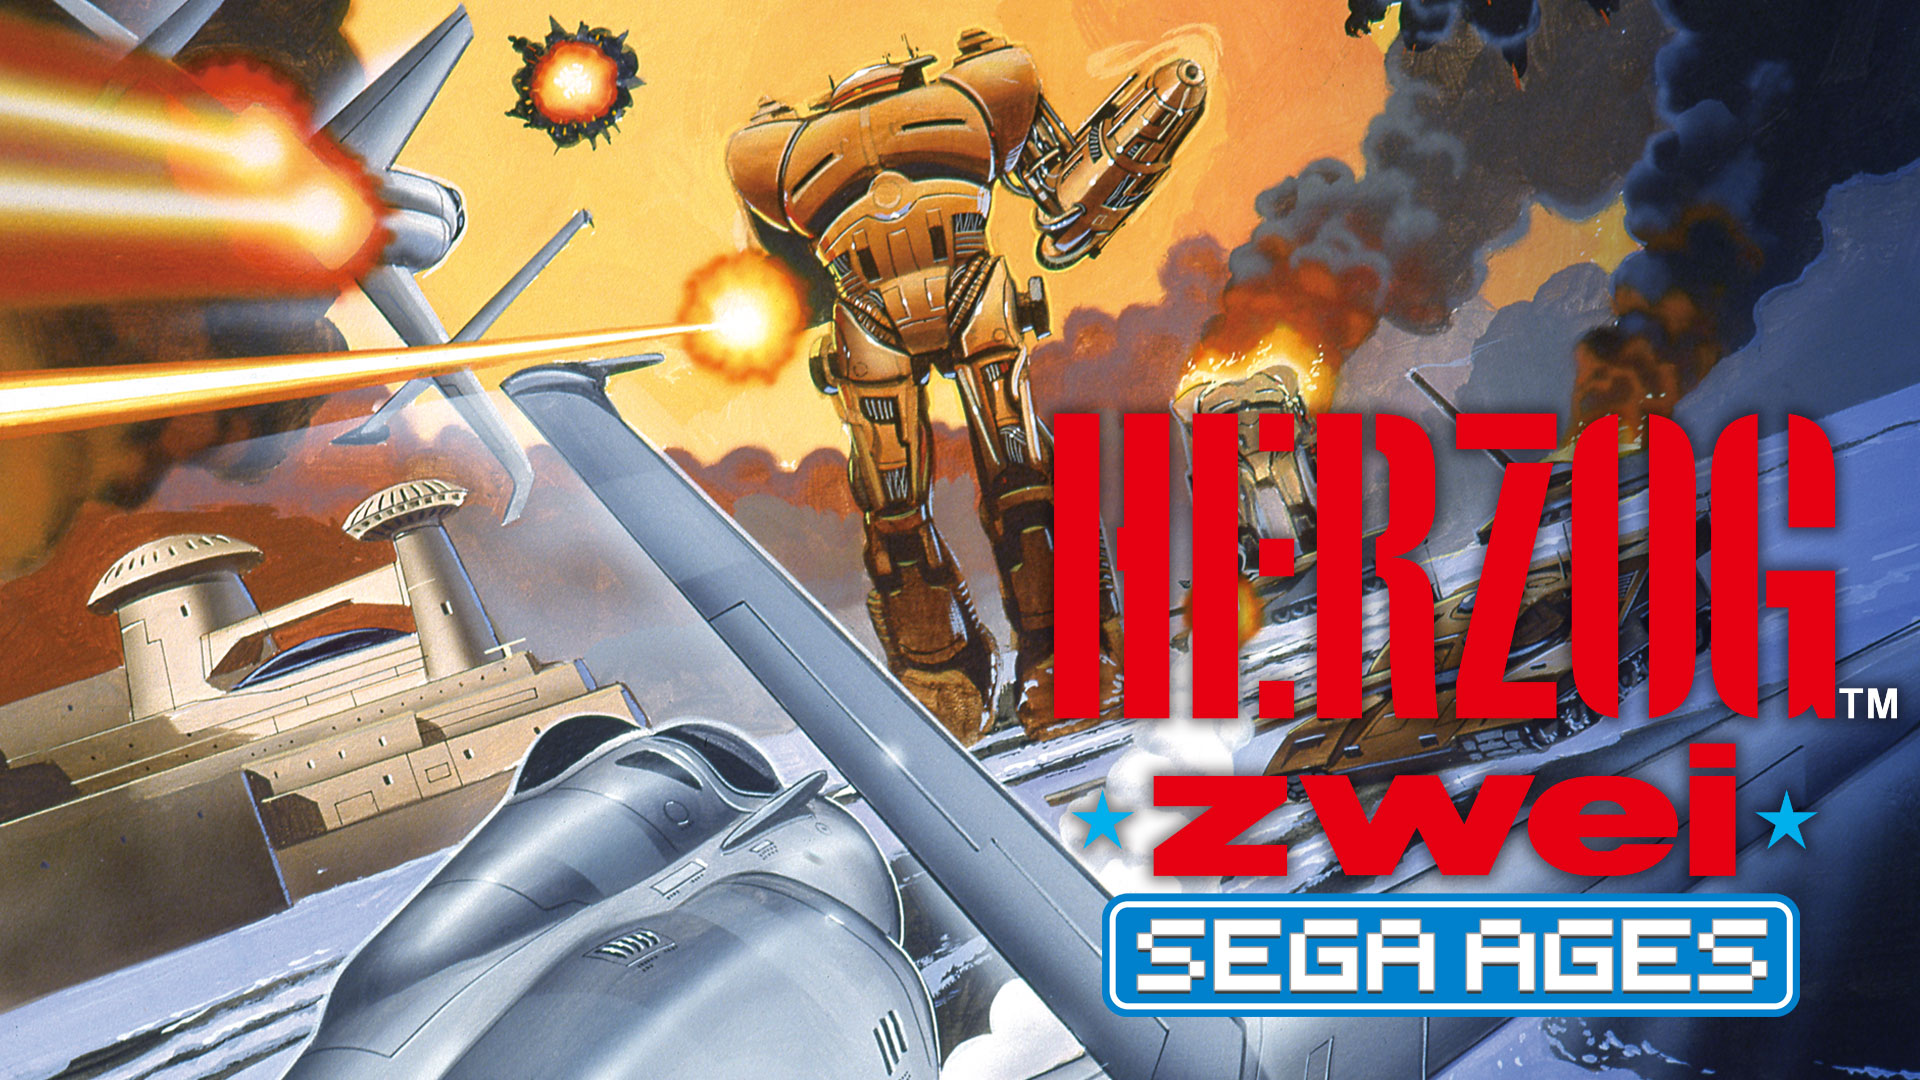 Herzog Zwei обзор игры прохождение одного уровня Sega Mega Drive / Genesis / GENS